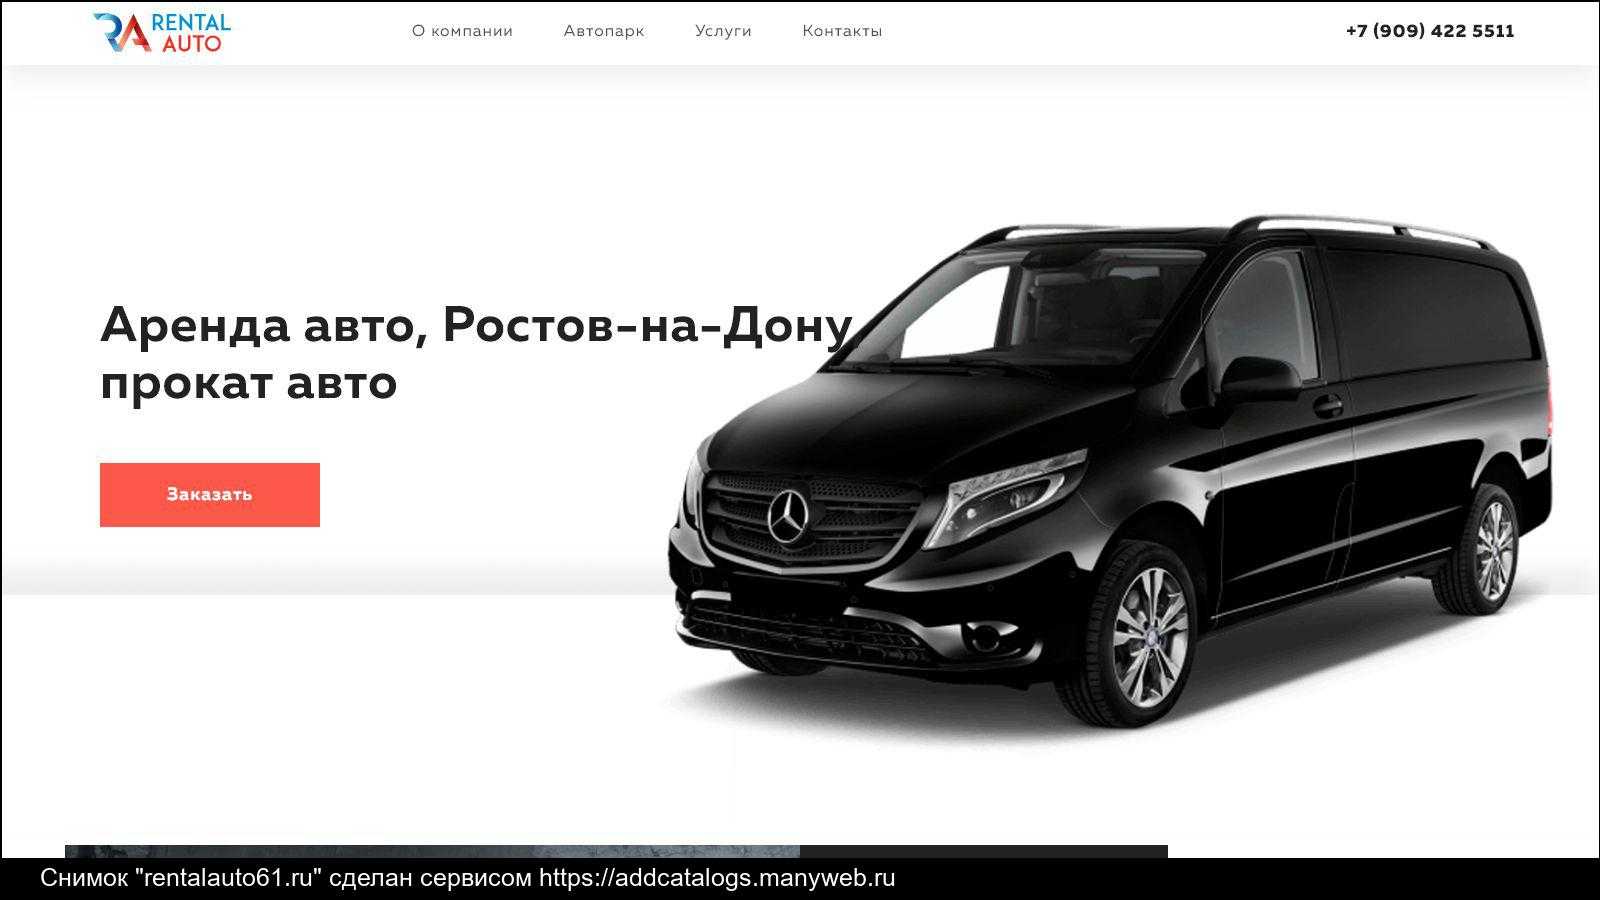 Лучшие 5 сервисов автопроката в нижнем новгороде: отзывы, цены, условия аренды машин!